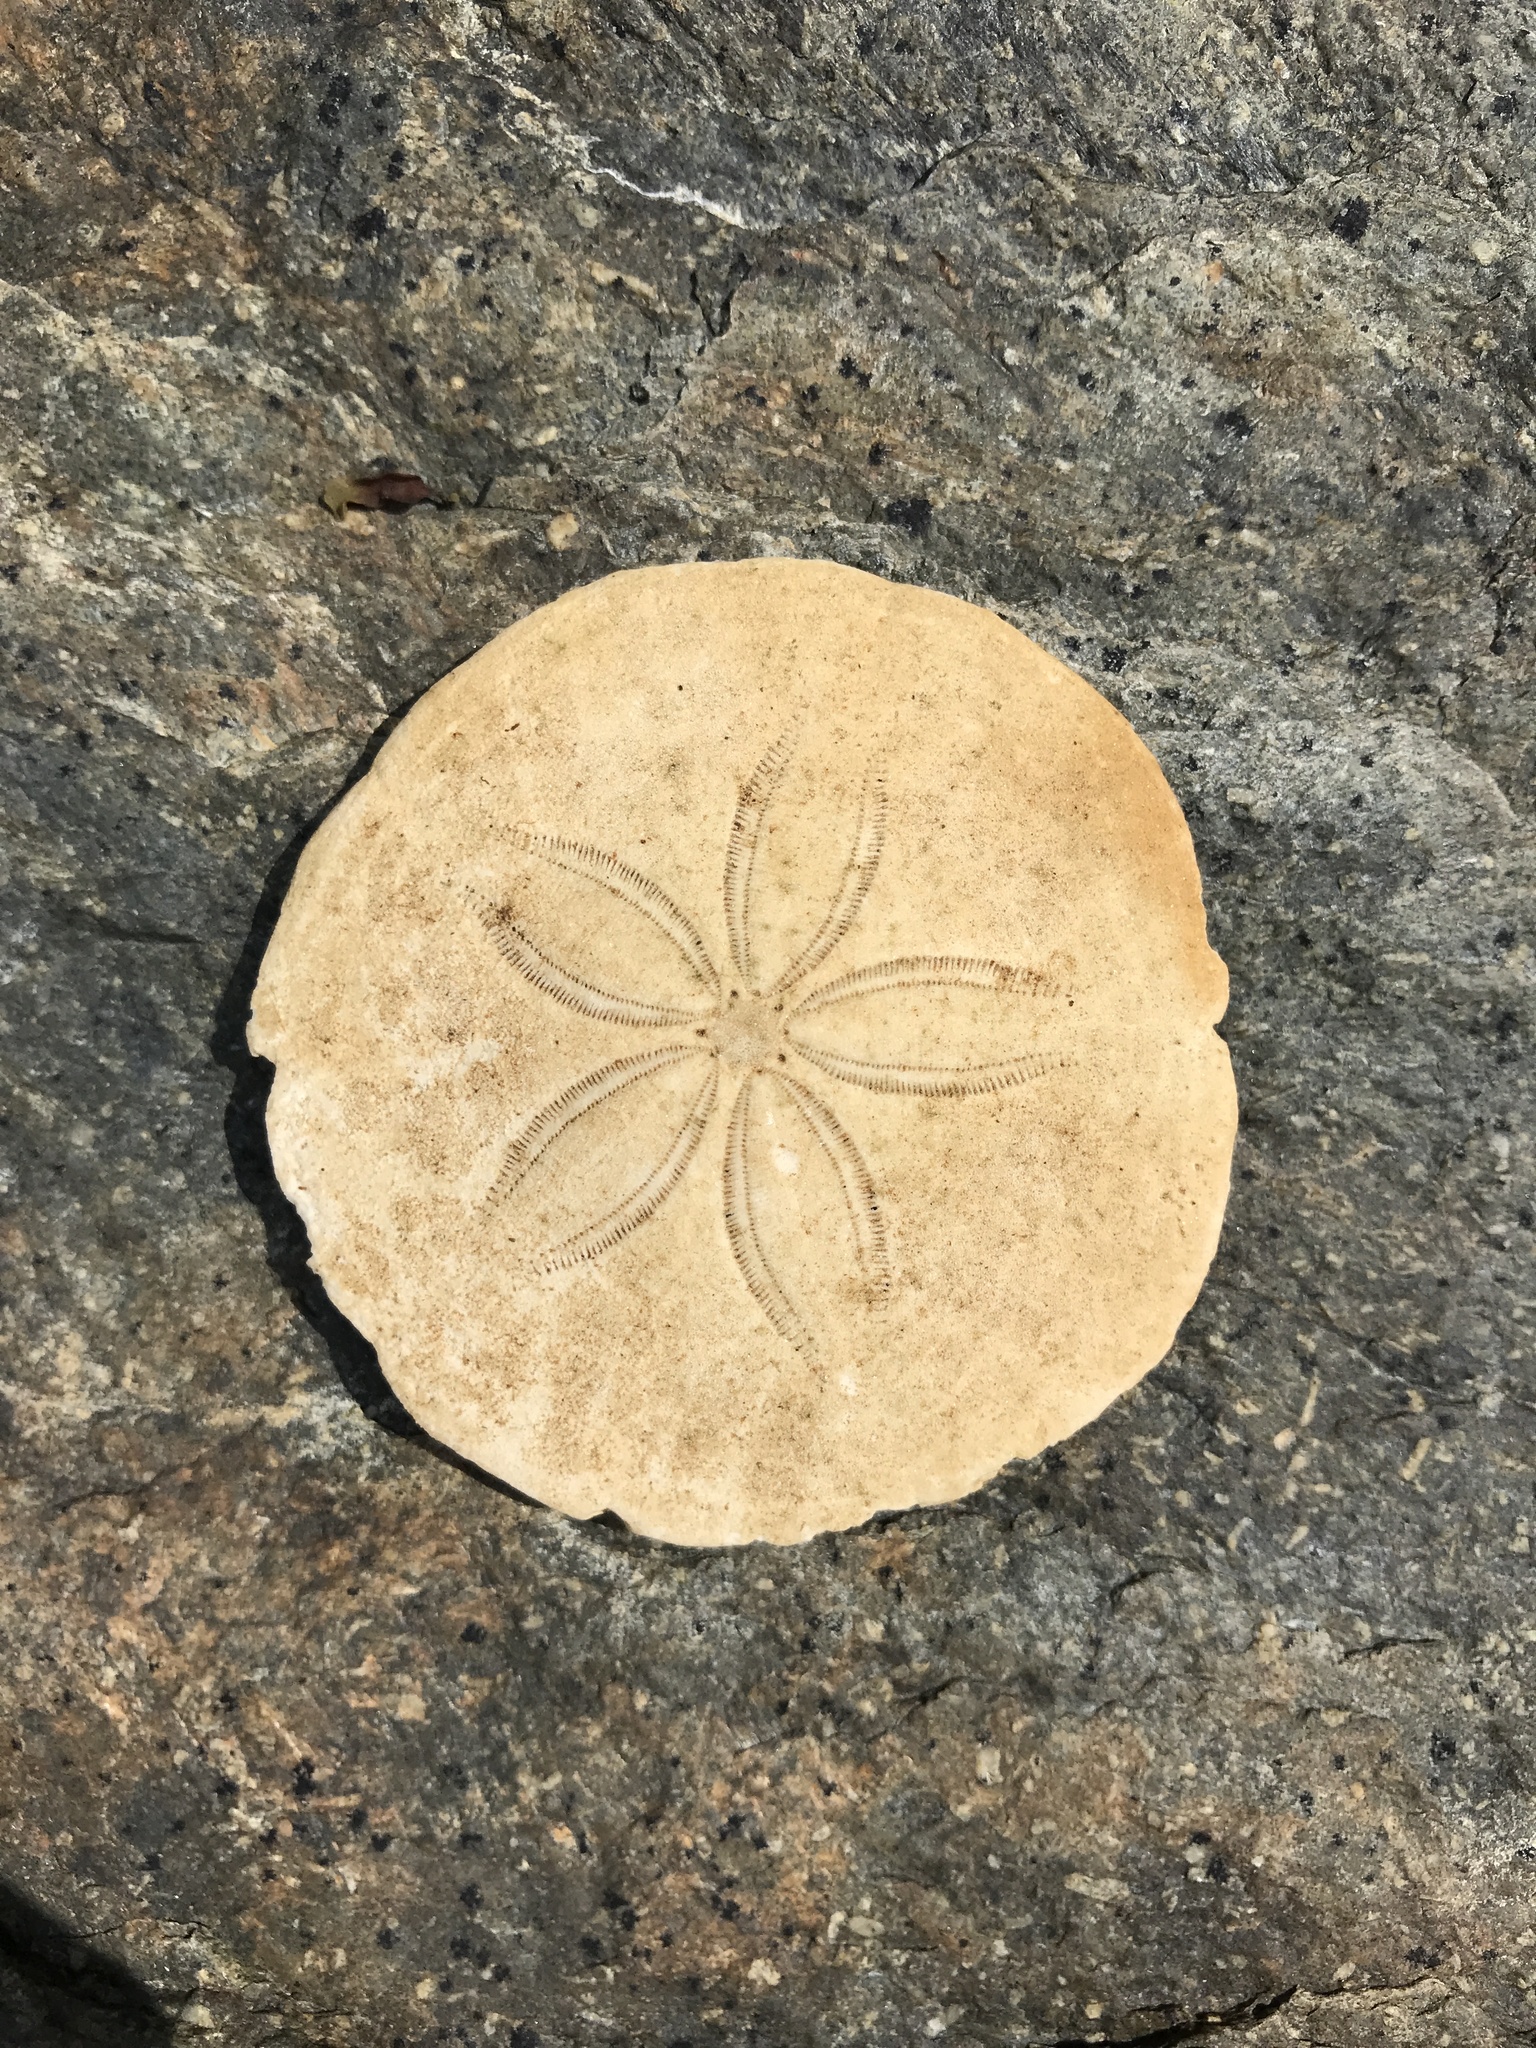 Common Sand Dollar (Echinarachnius parma) · iNaturalist